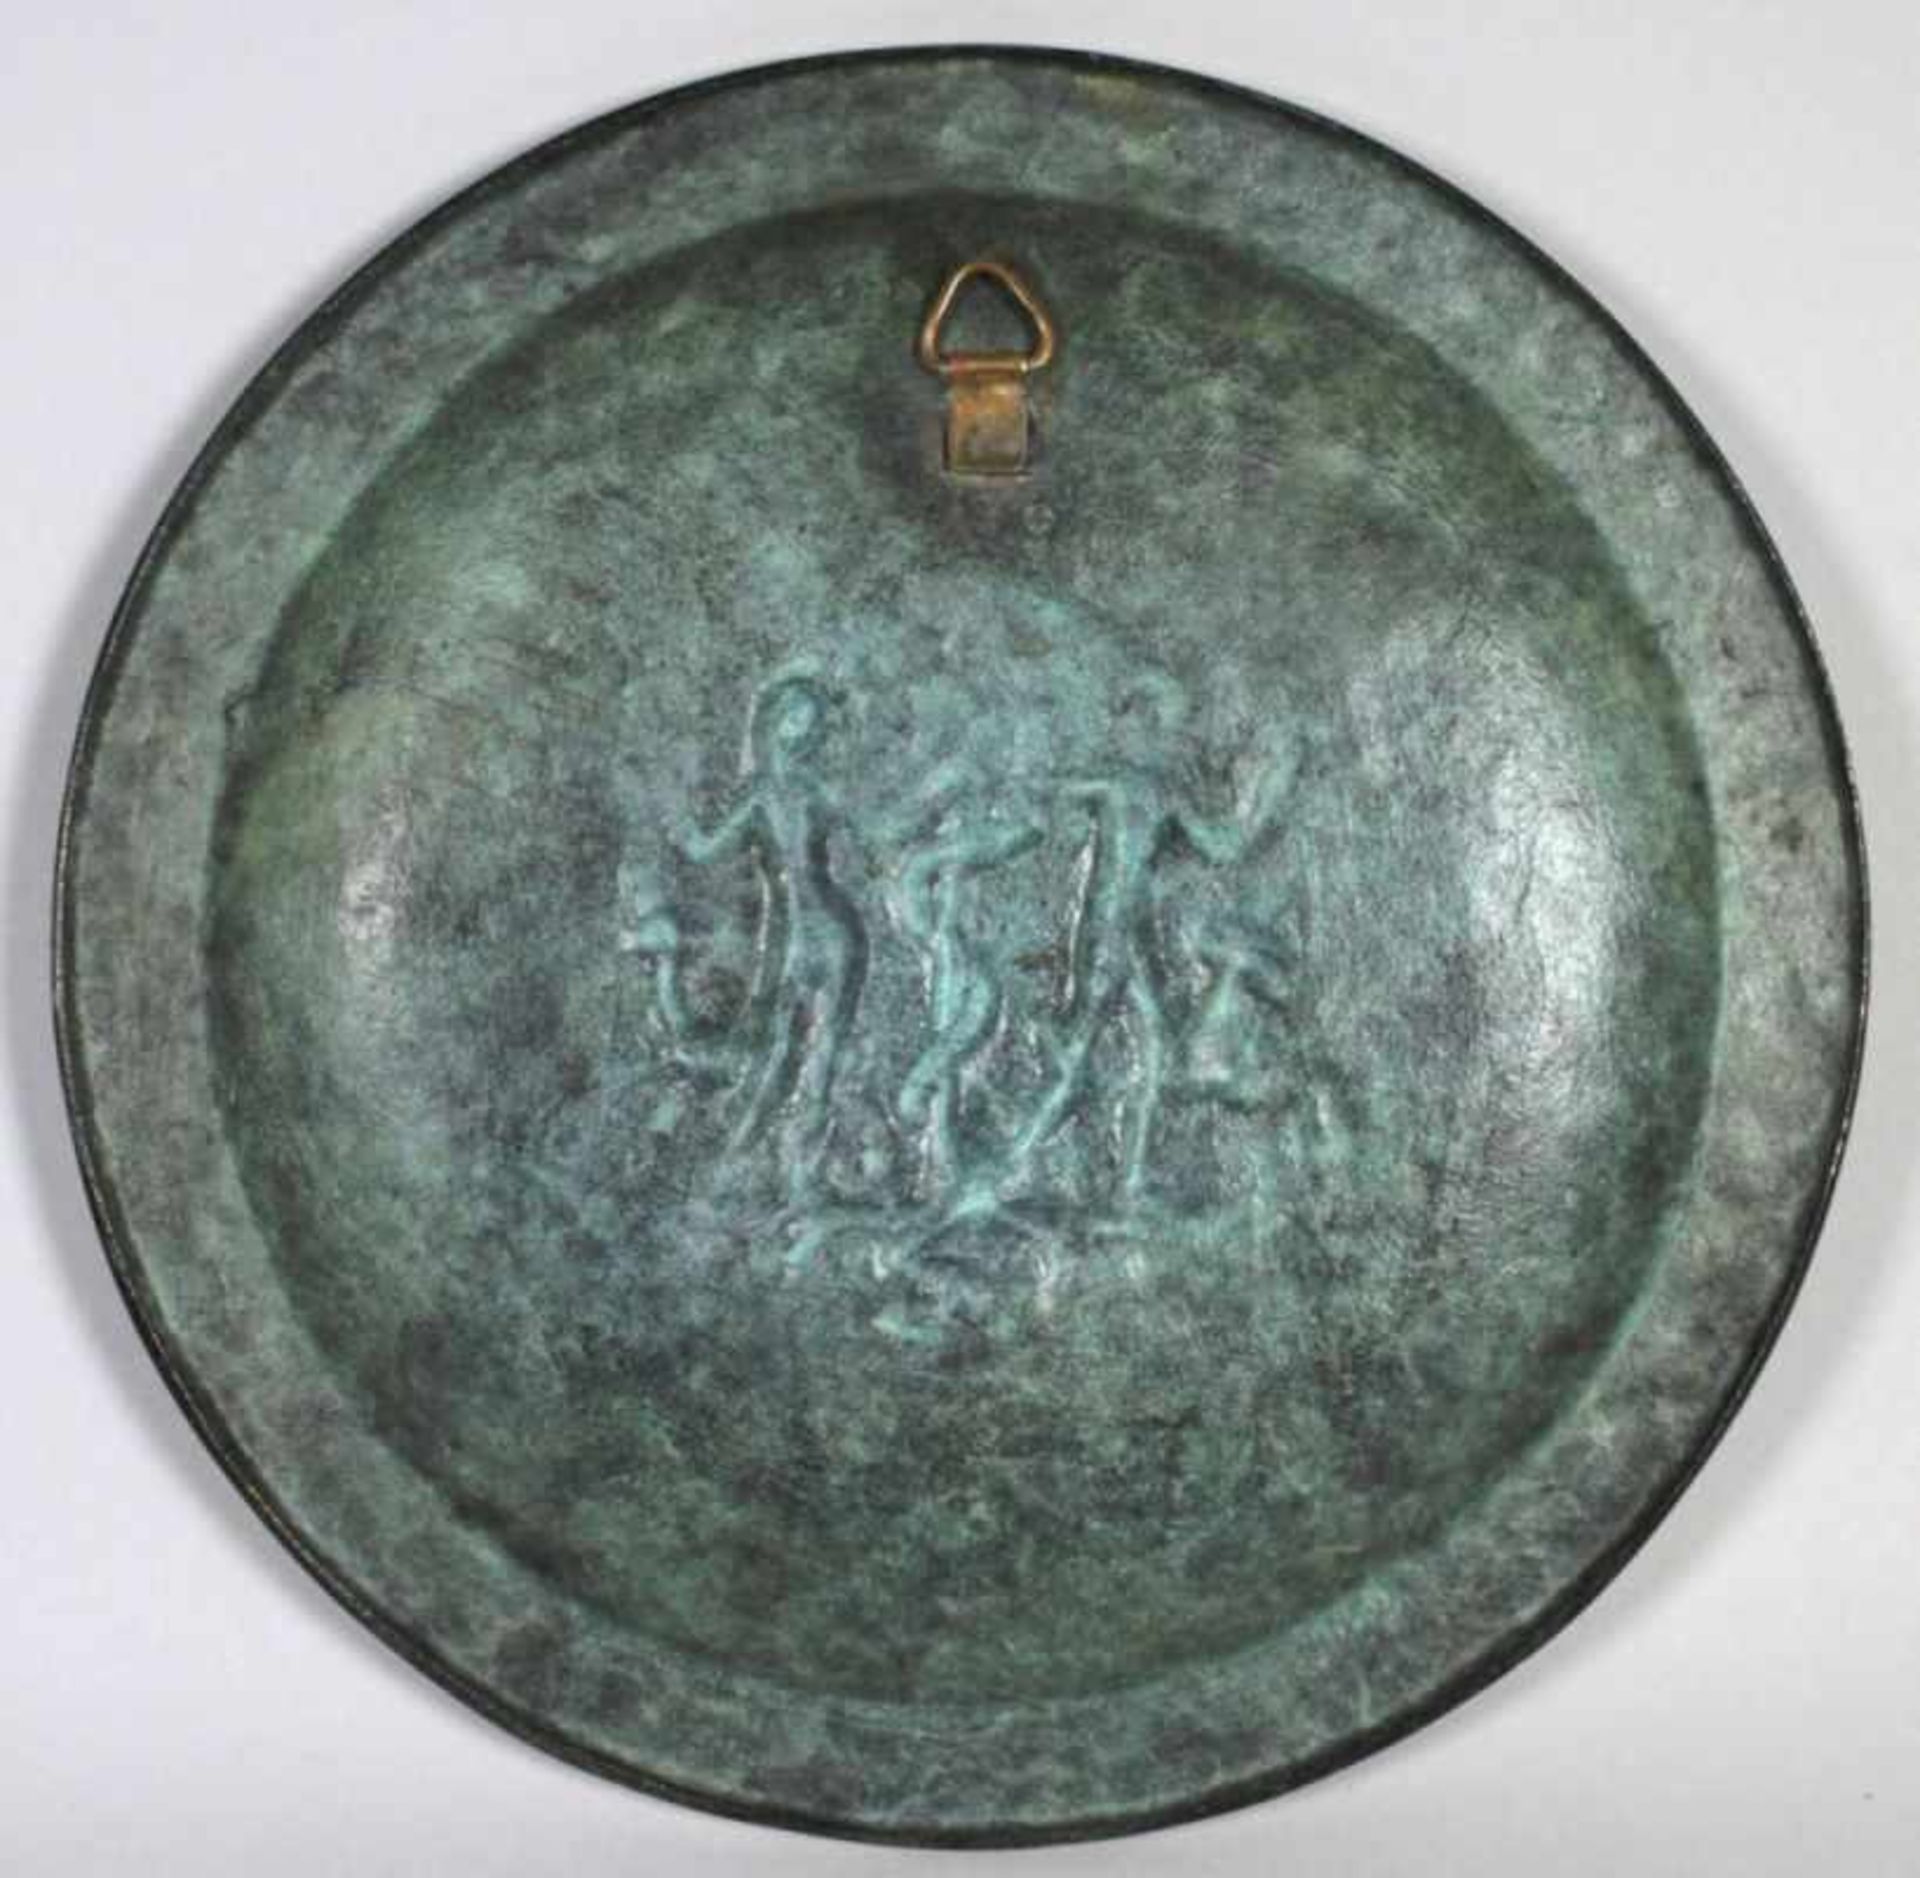 Bronze-Wandteller, "Adam und Eva", Nuss, Fritz, 1907 - 1999, im Spiegel - Bild 2 aus 3